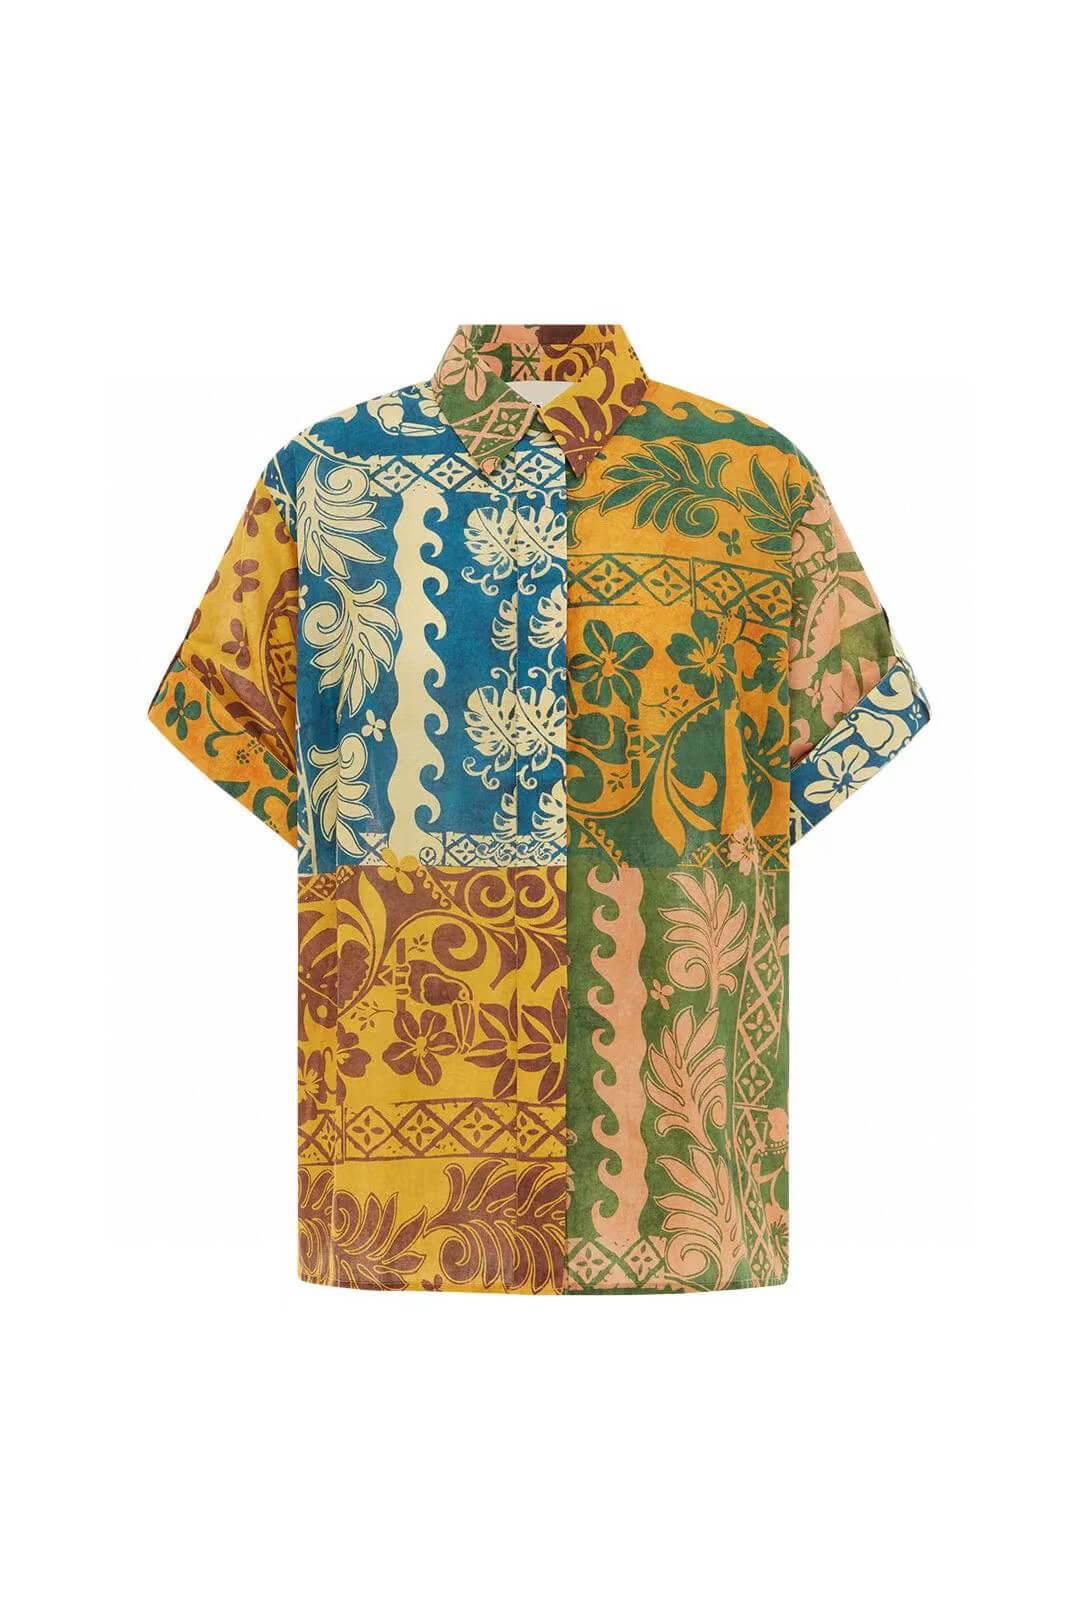 Vacation Linen Print shirt suit 2 piece set | EnerChic™ - EnerChic